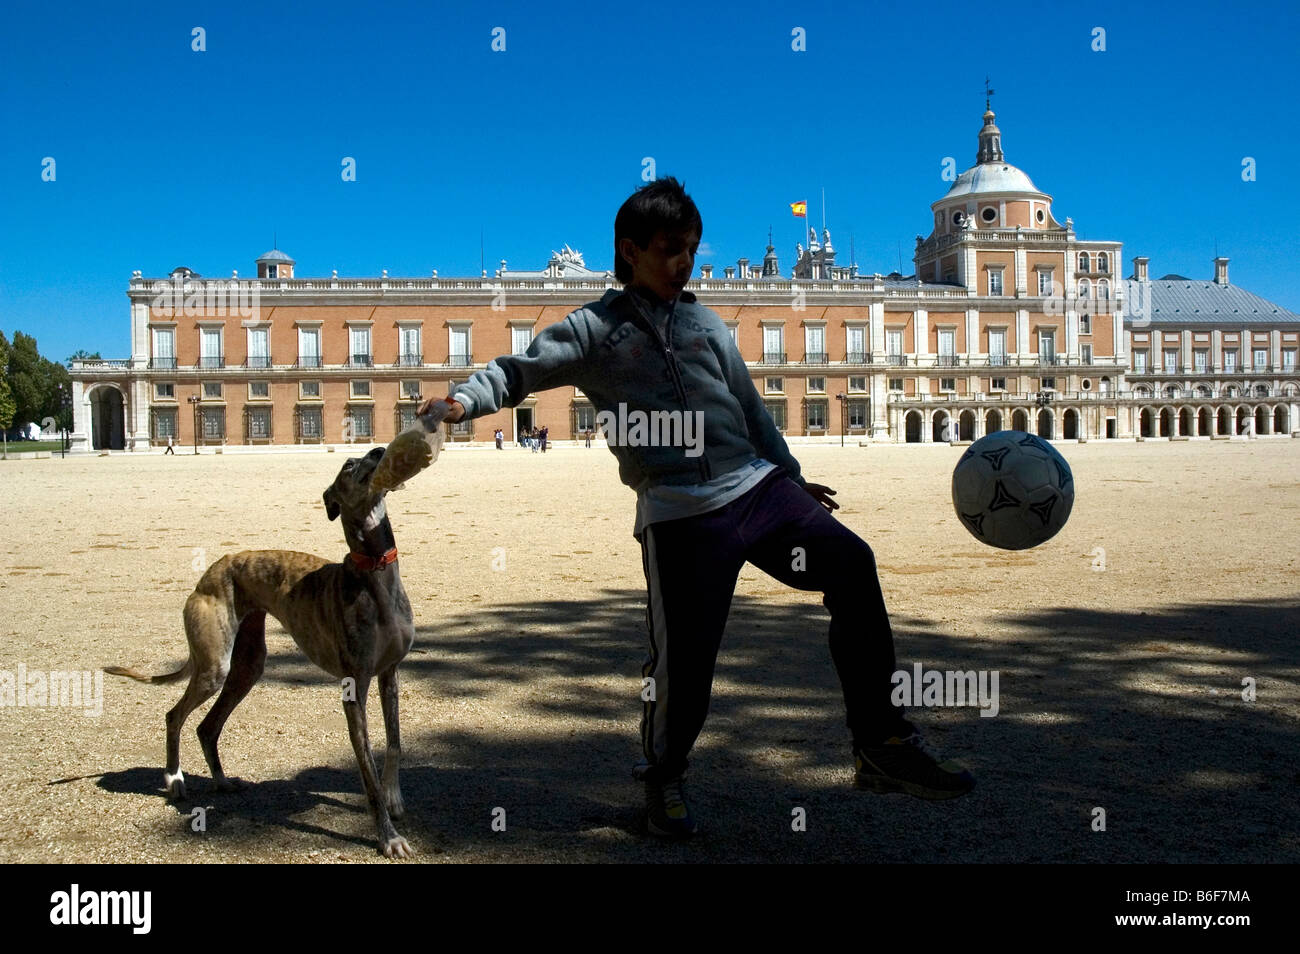 Palacio Real de Aranjuez Comunidad Autónoma de Madrid España Foto de stock